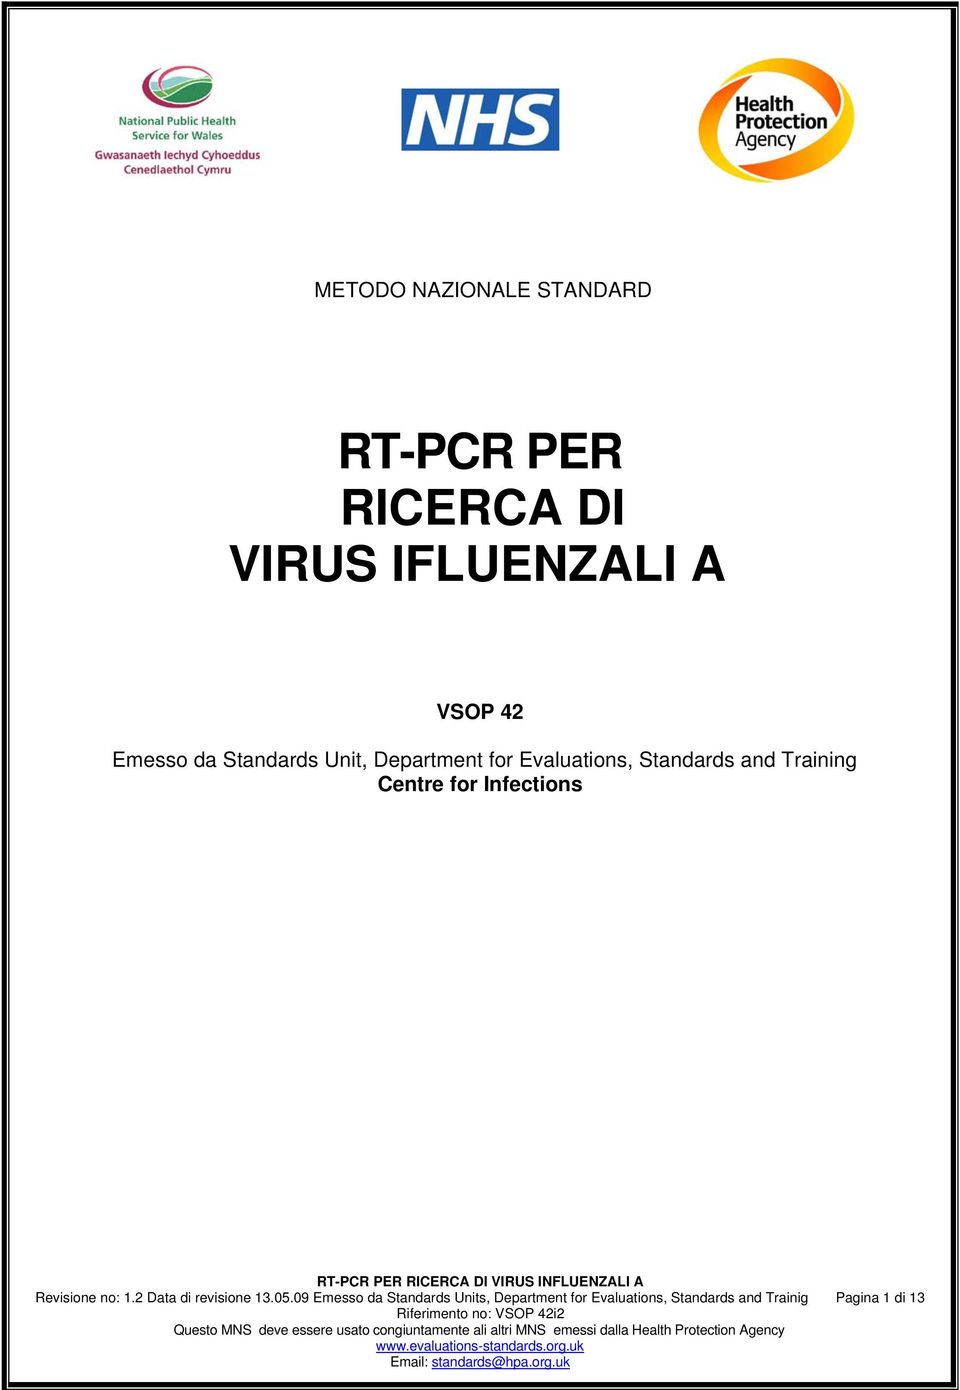 Infections Revisione no: 1.2 Data di revisione 13.05.